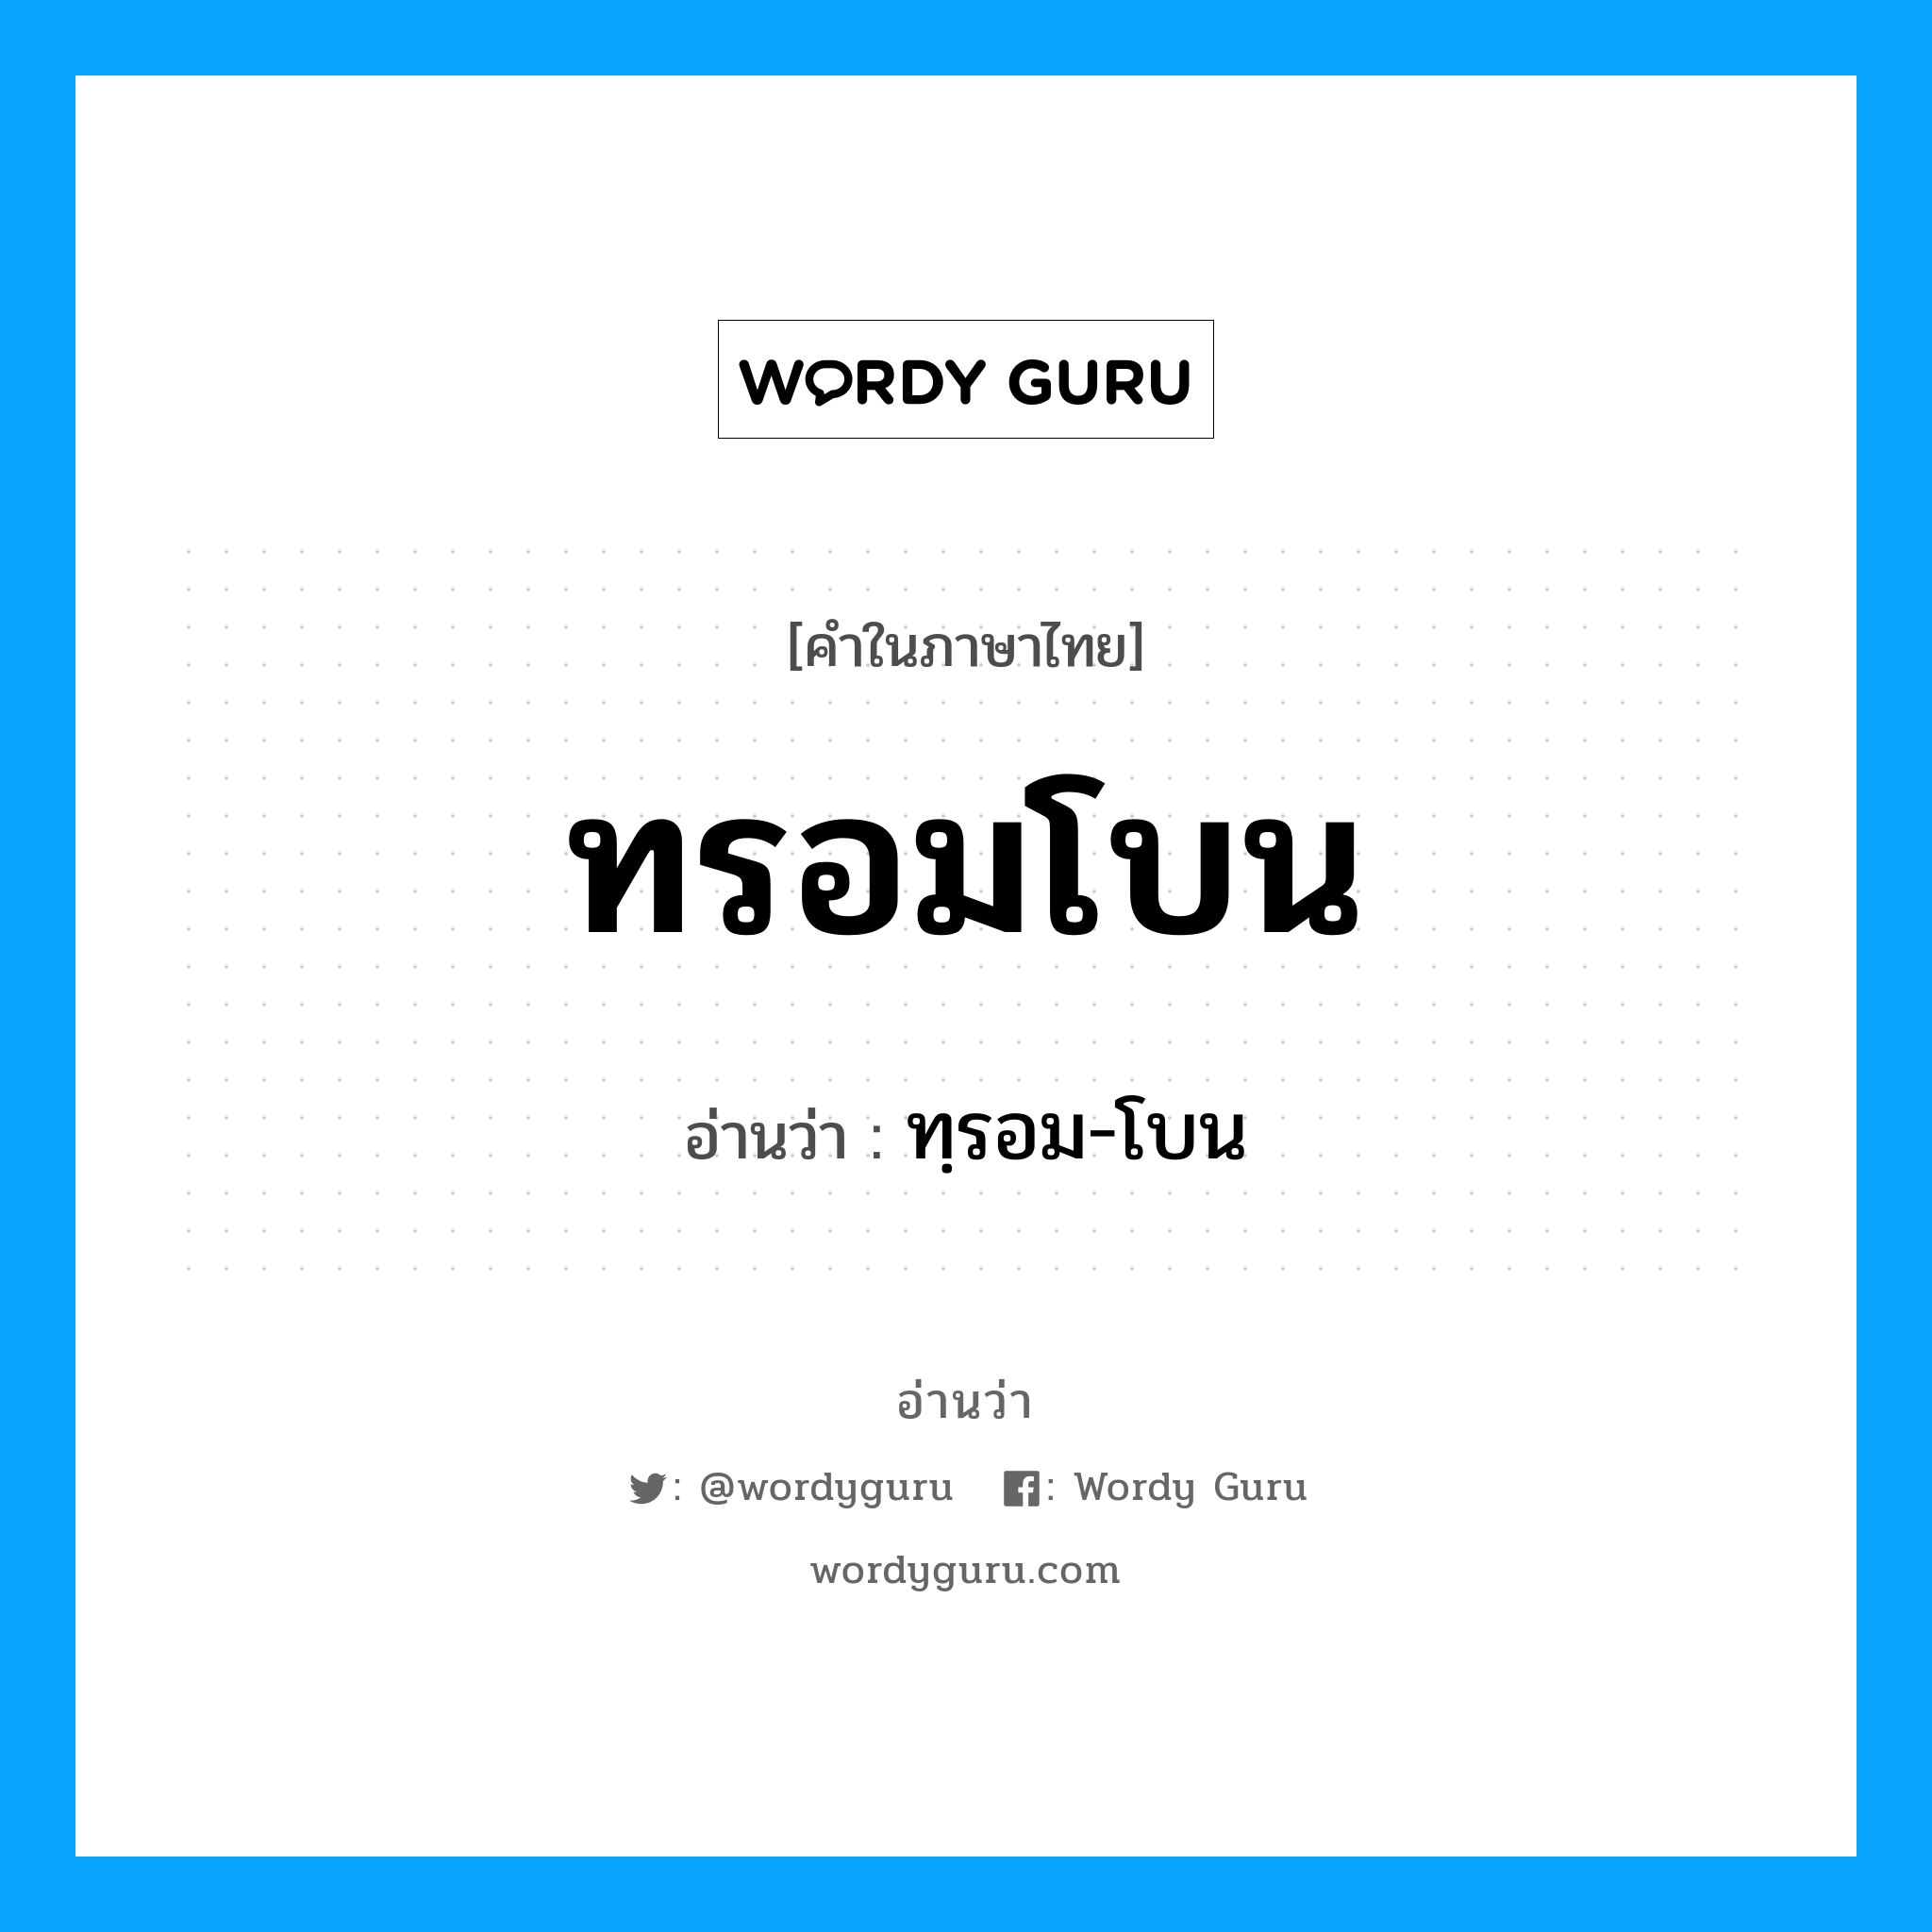 ทฺรอม-โบน เป็นคำอ่านของคำไหน?, คำในภาษาไทย ทฺรอม-โบน อ่านว่า ทรอมโบน